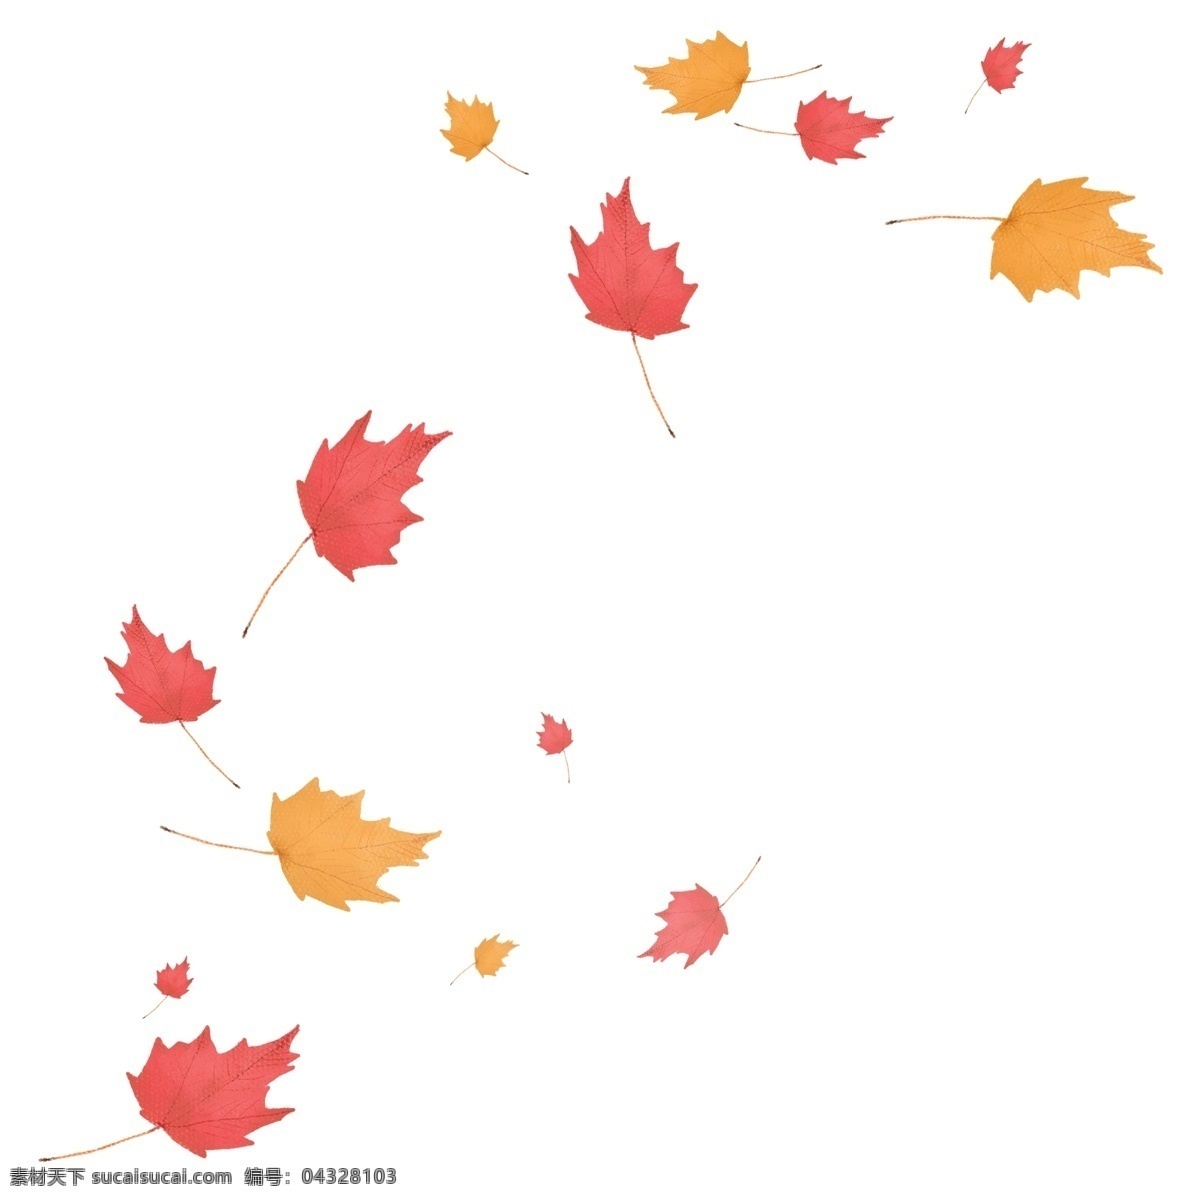 风吹 散 落叶 漂浮 枫叶 吹风效果 风 飘落 飘散 飘洒 散落 叶子 banner 海报 秋季 秋天 方向 动感